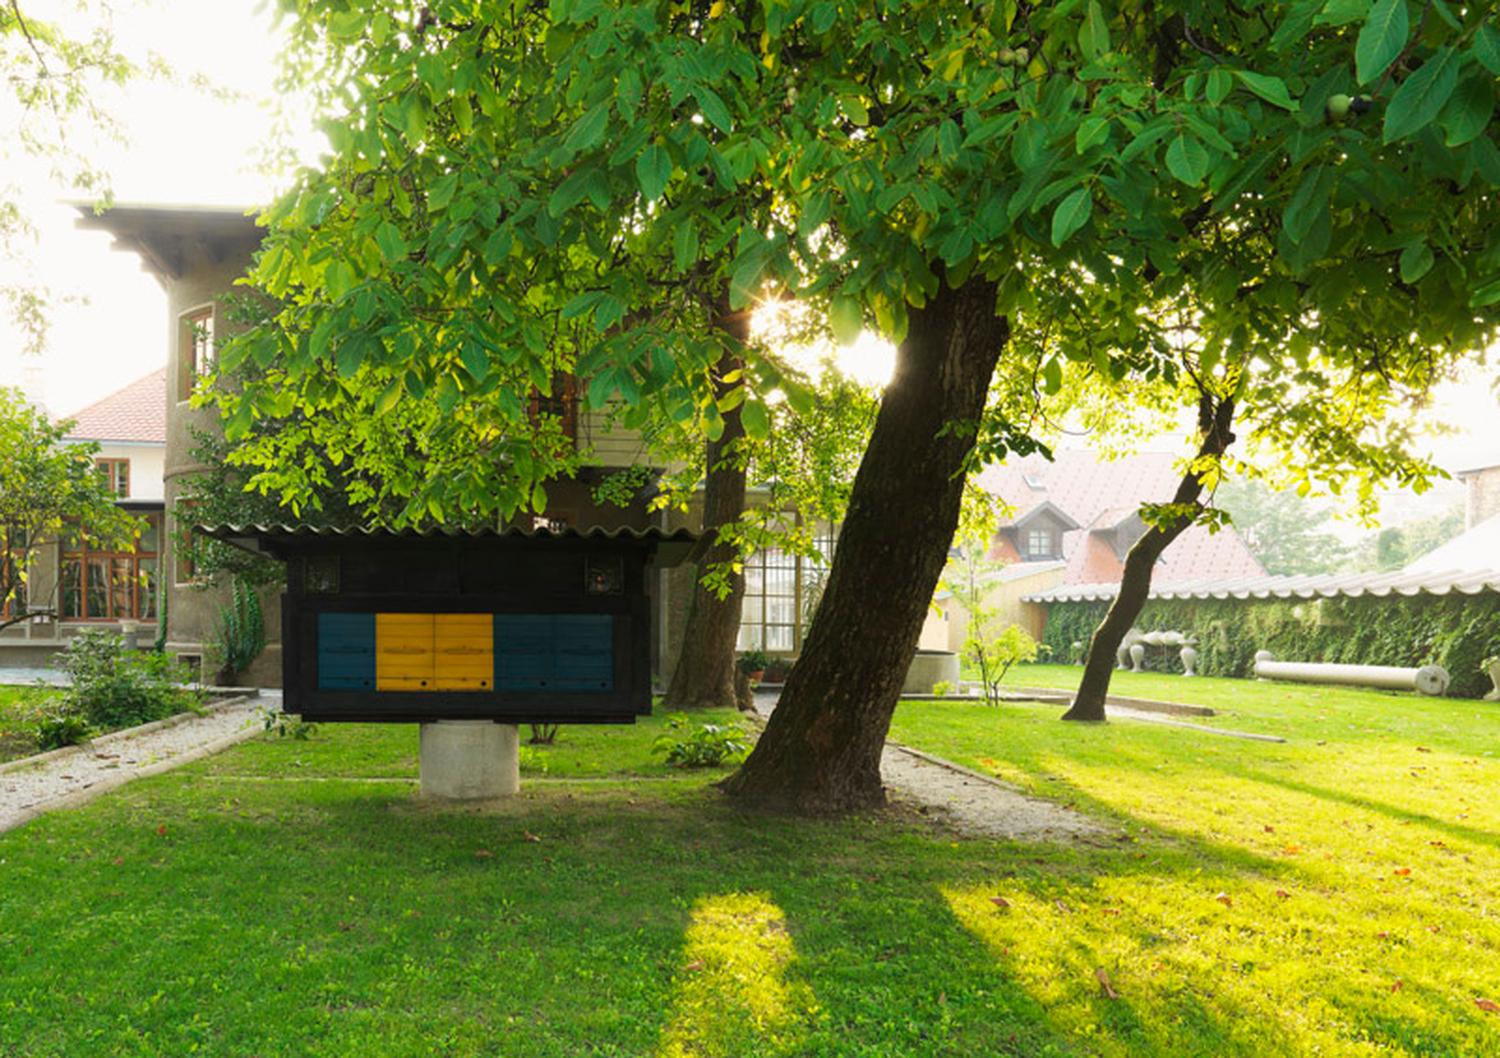 Čebelnjak na vrtu Plečnikove hiše; arhitekt je zelo cenil marljivost čebel